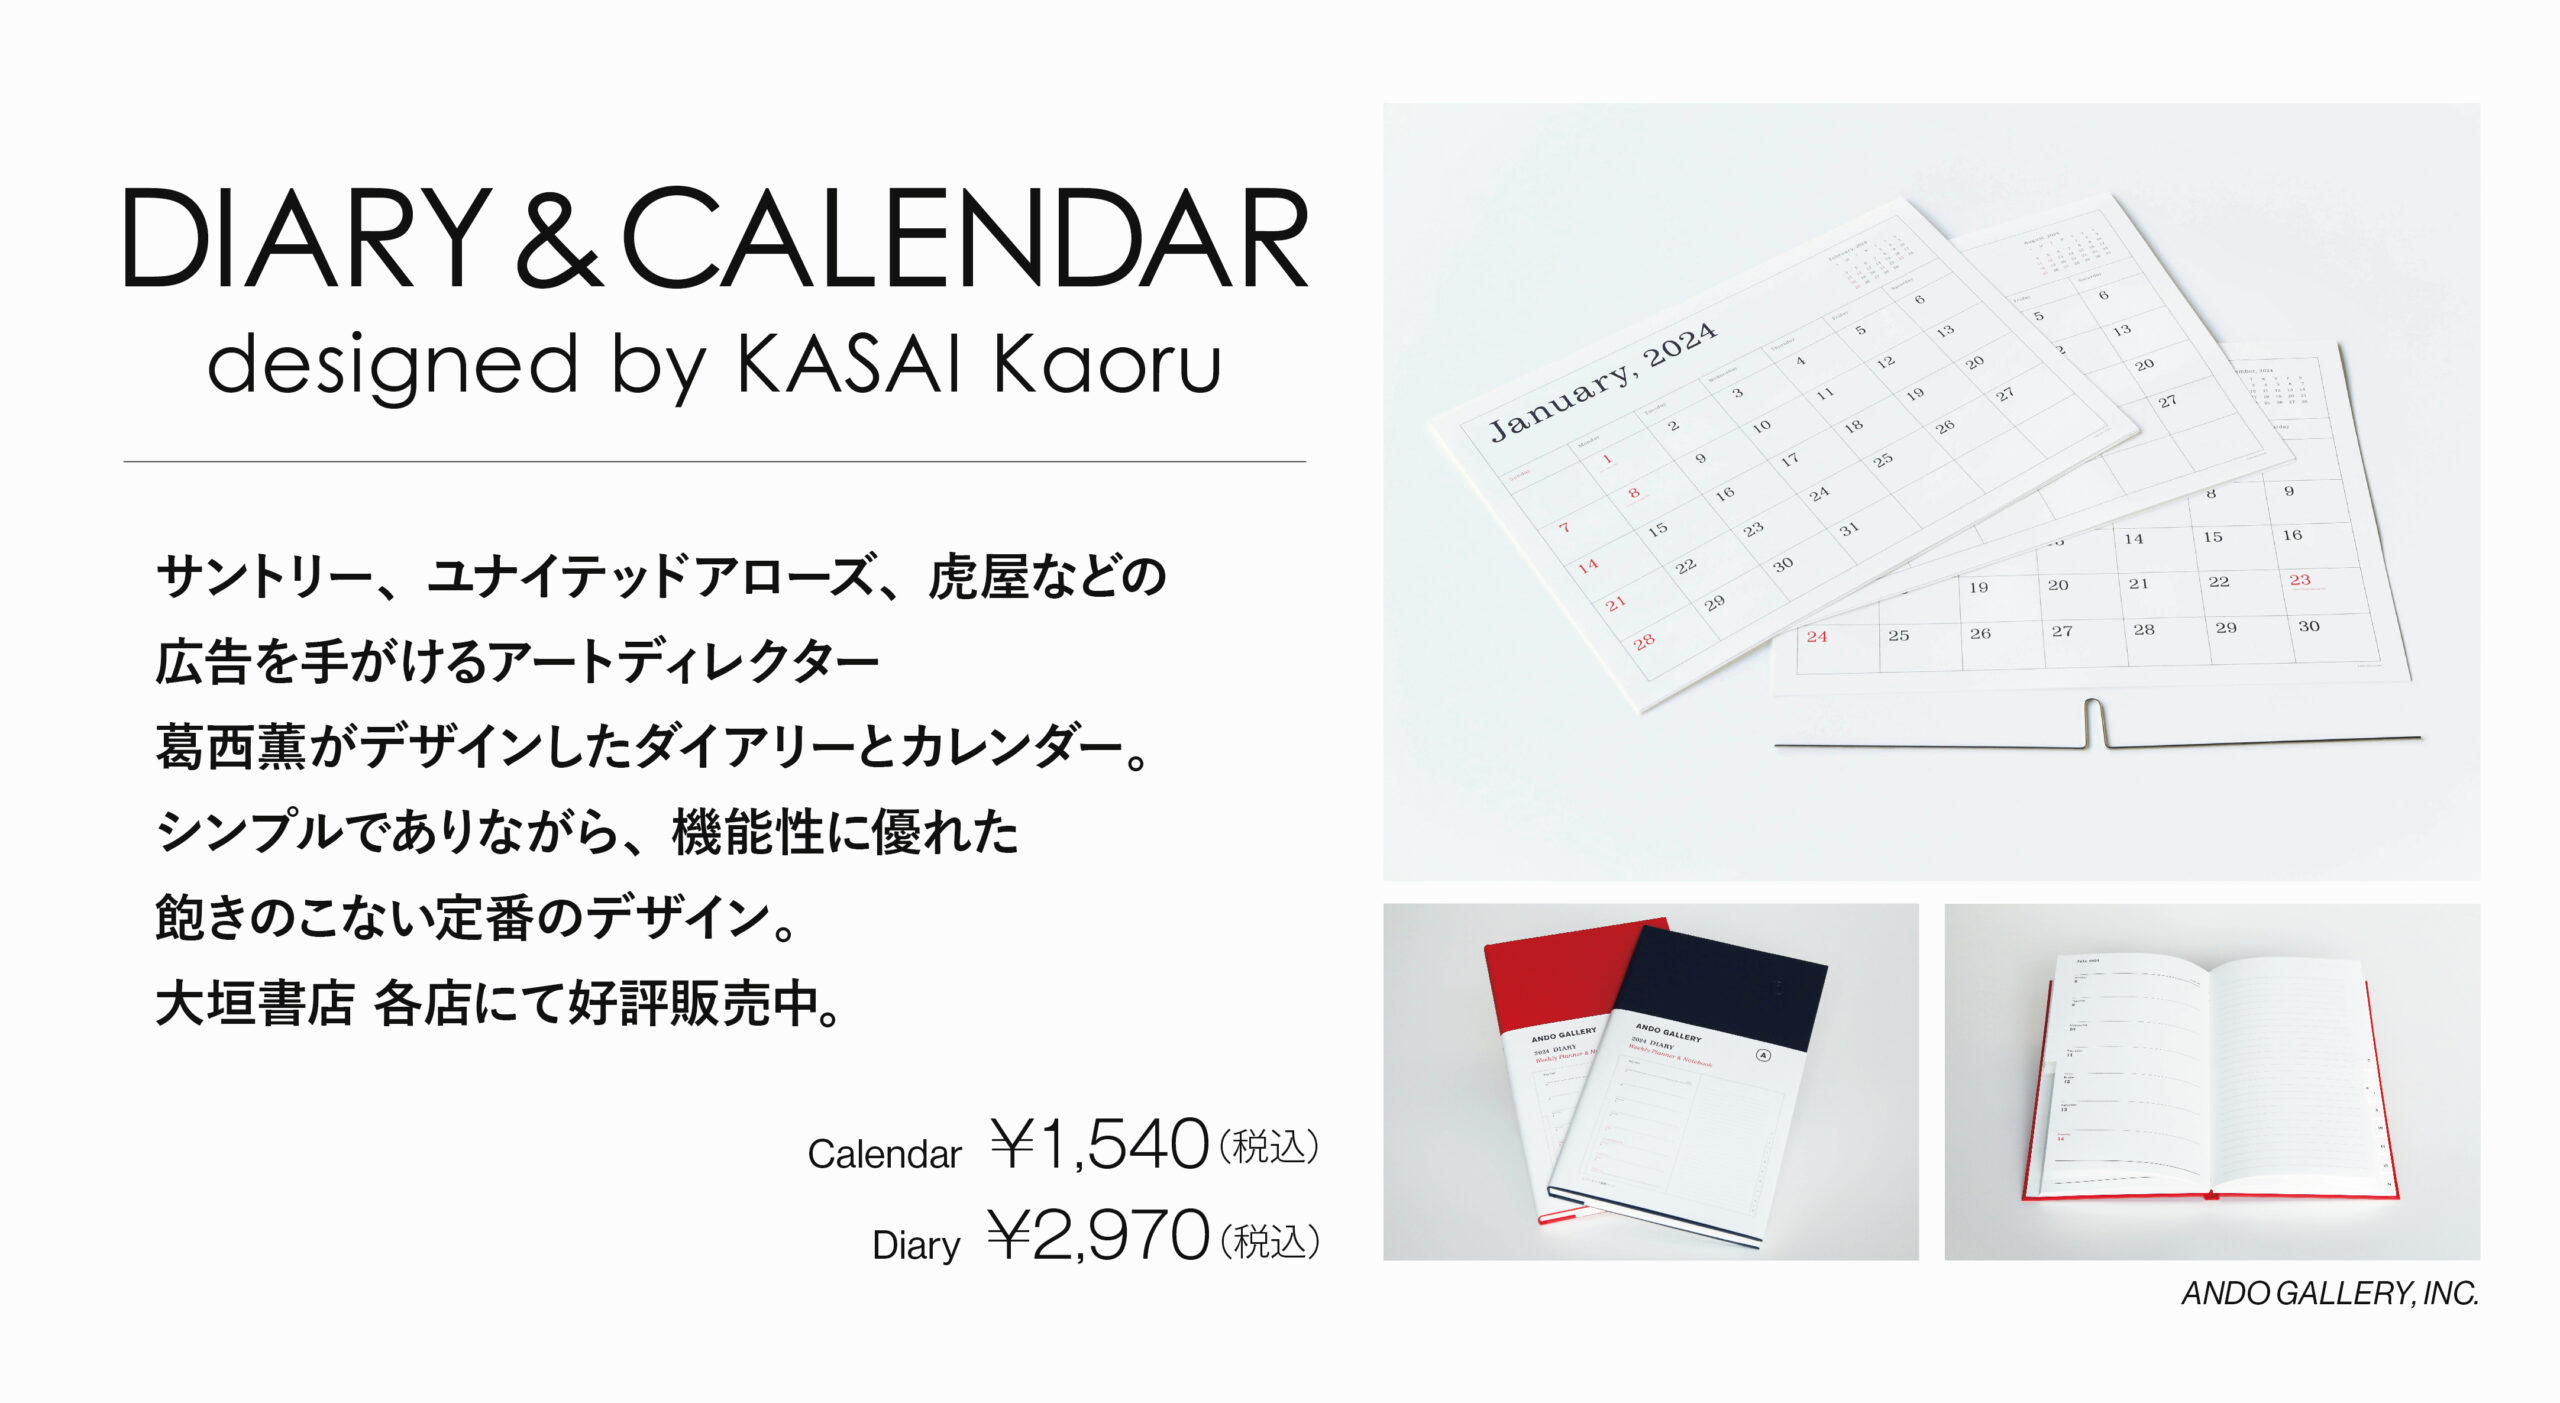 1月末頃まで】アートディレクターの葛西 薫が手がけた手帳とカレンダー 